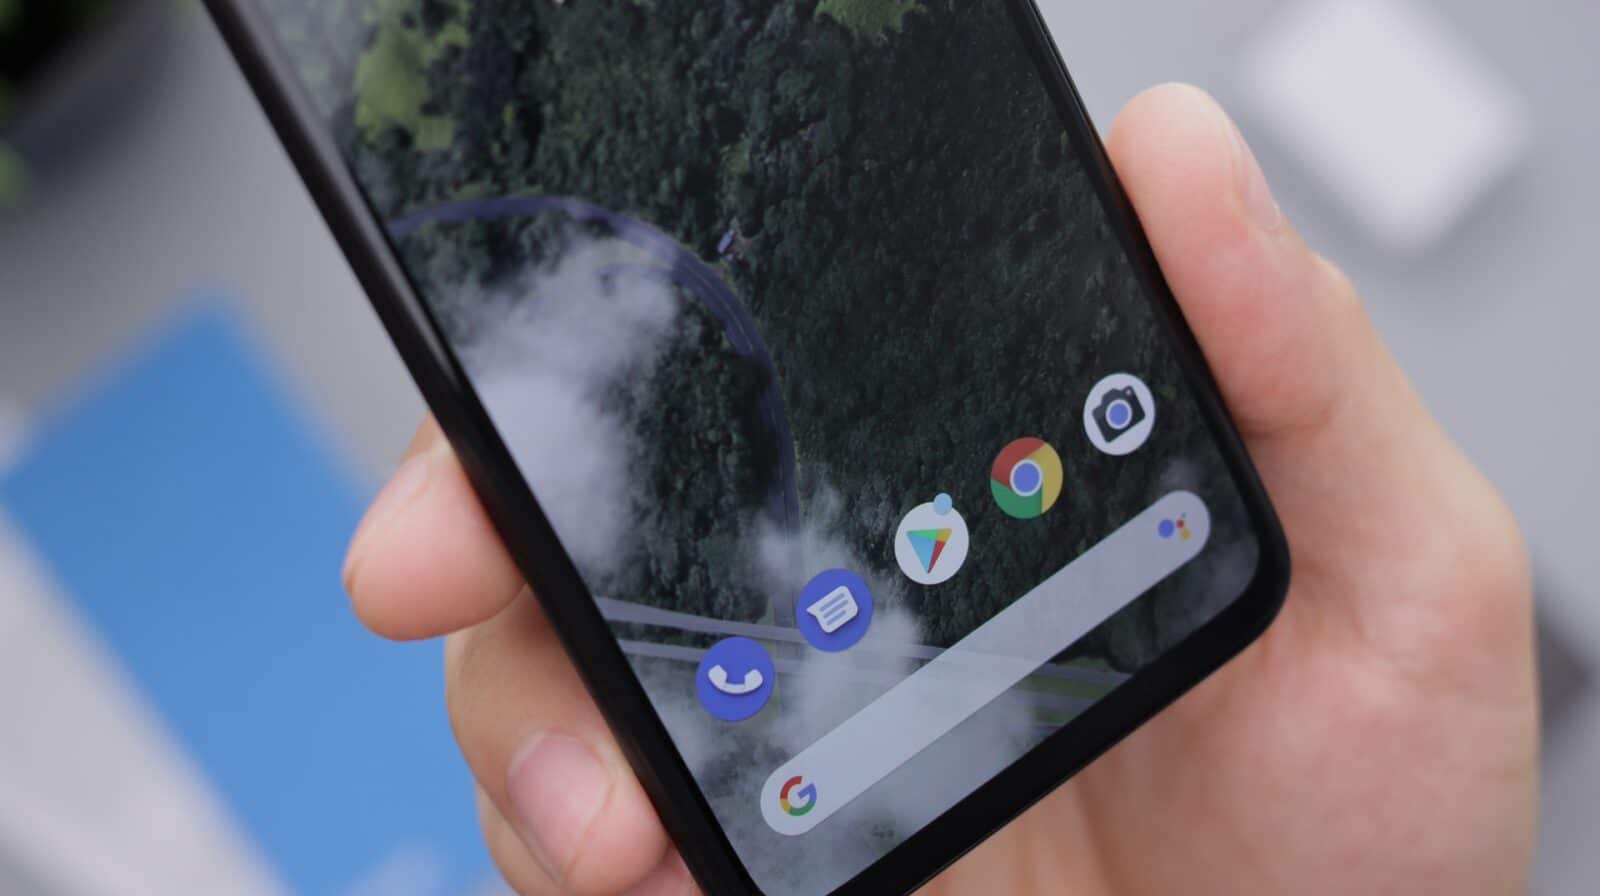 google-messages-bug-vider-batterie-smartphone-android